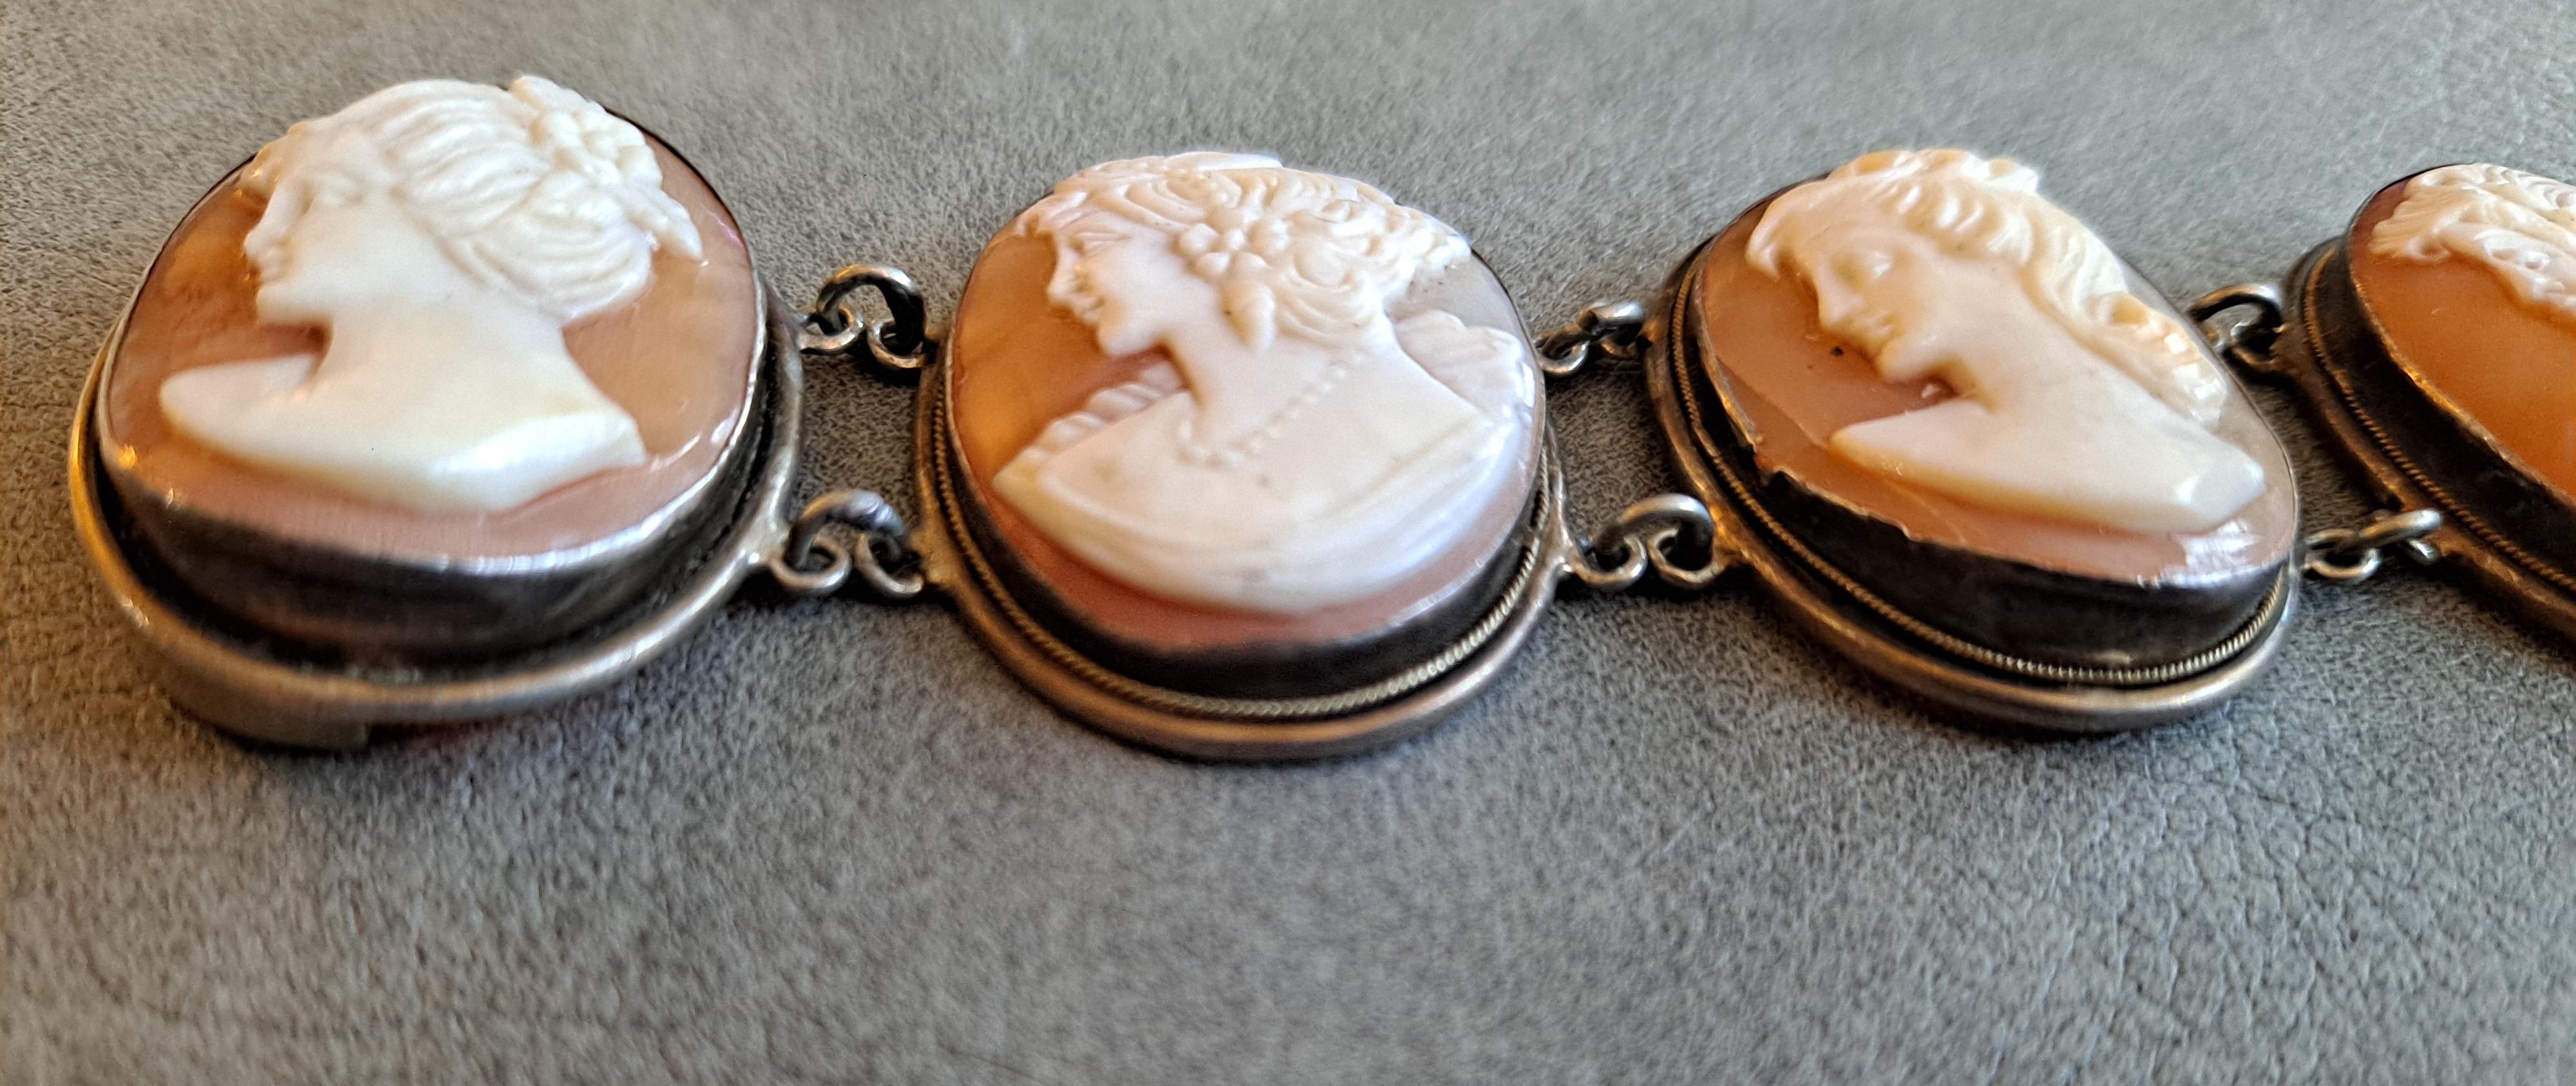 20th Century Victorian Revival Bracelet Set in Sterling Sliver Frames   For Sale 1